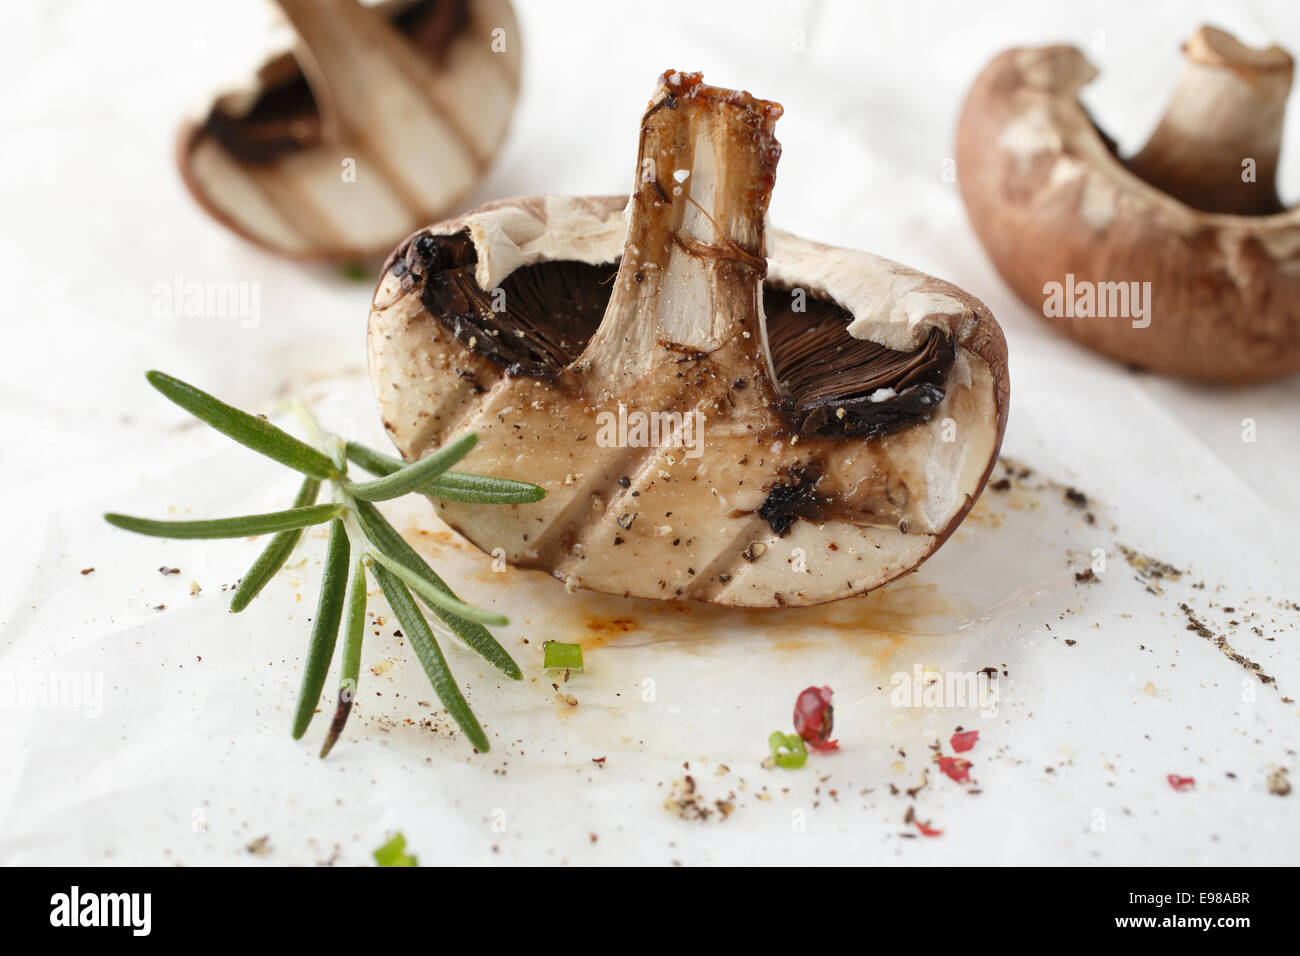 Frisch gegrillte halbierte Pilze, gewürzt mit Pfeffer und ein Zweig frischer Rosmarin für eine gesunde vegetarische Gericht Stockfoto